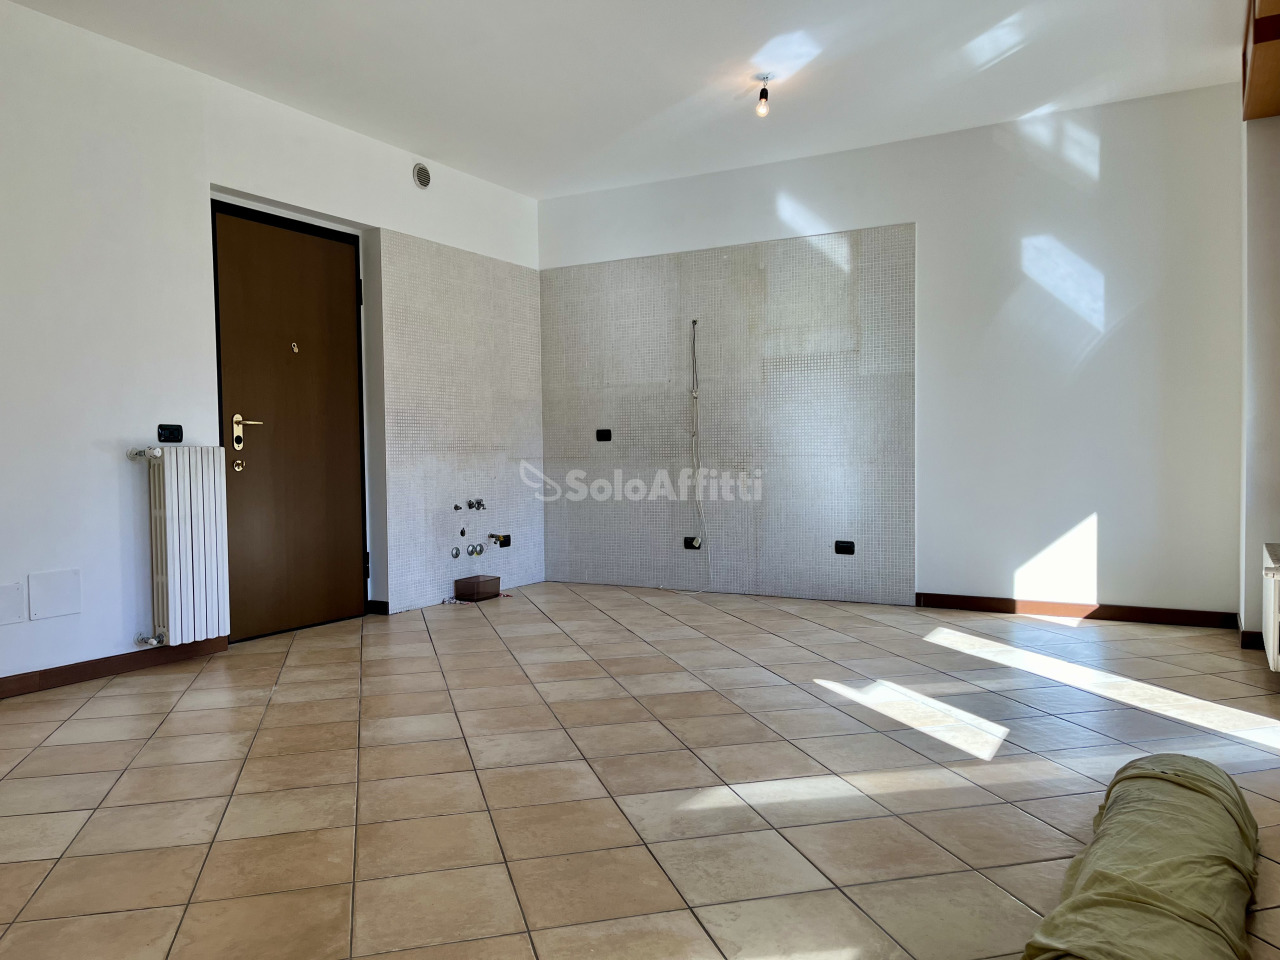 Appartamento in affitto a Varedo, 3 locali, prezzo € 730 | PortaleAgenzieImmobiliari.it